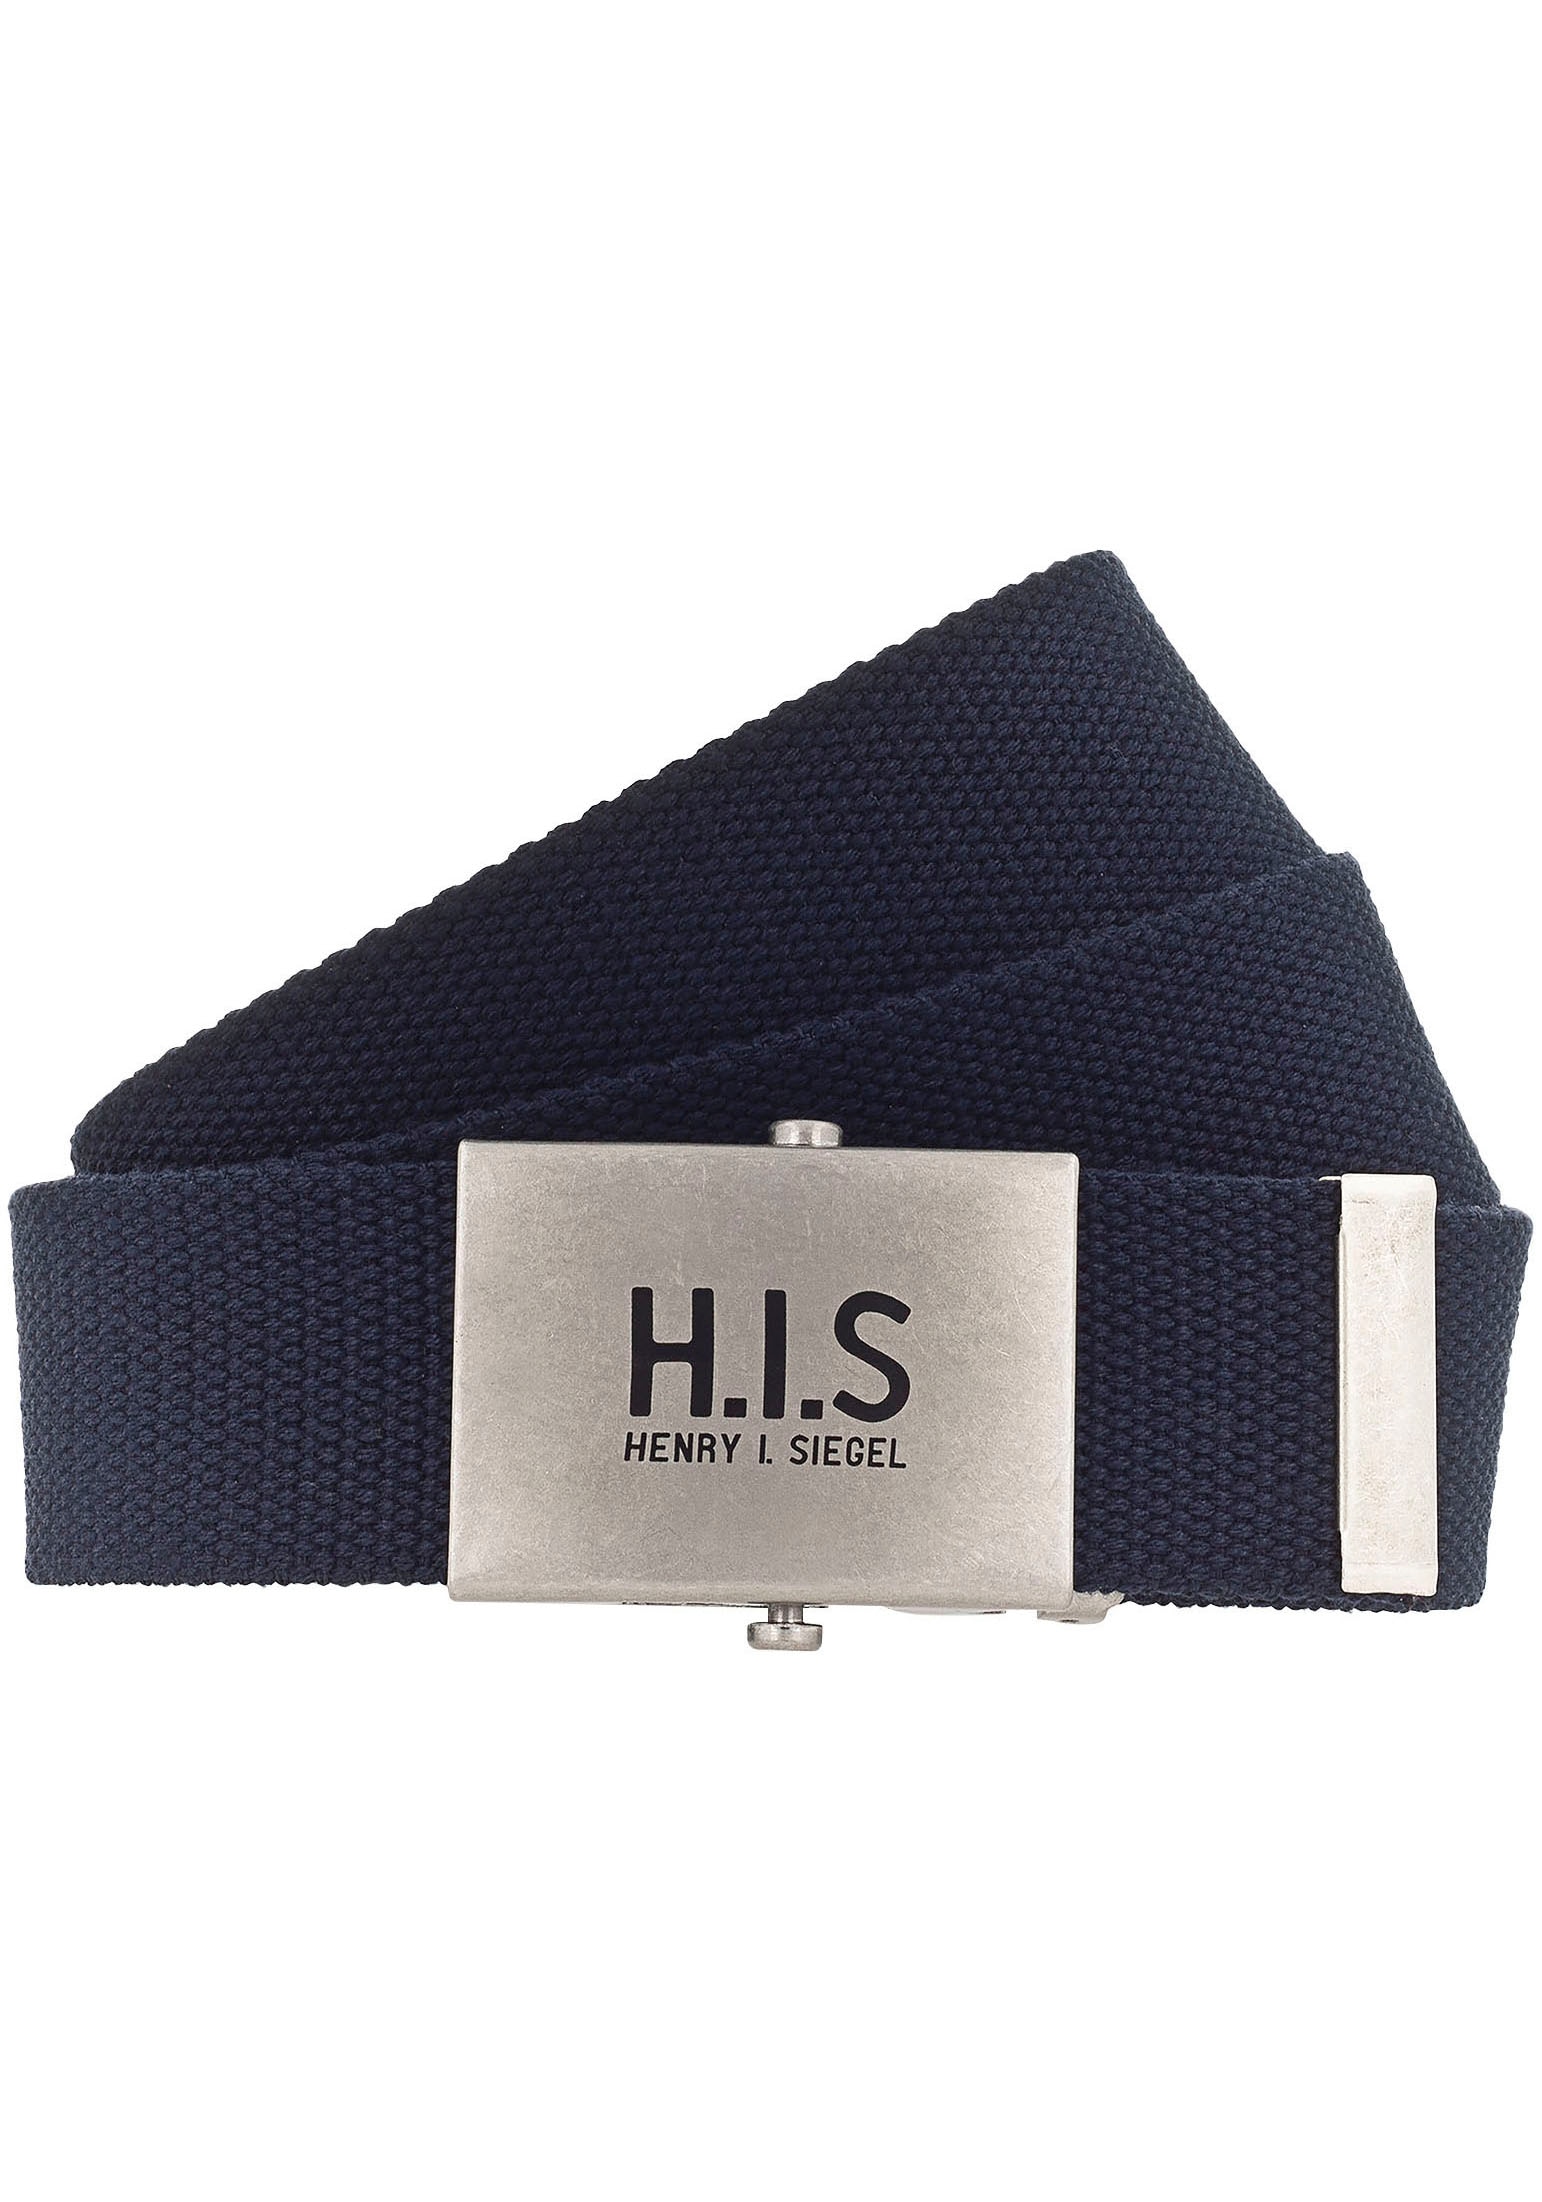 Stoffgürtel, Bandgürtel mit H.I.S Logo auf der Koppelschließe